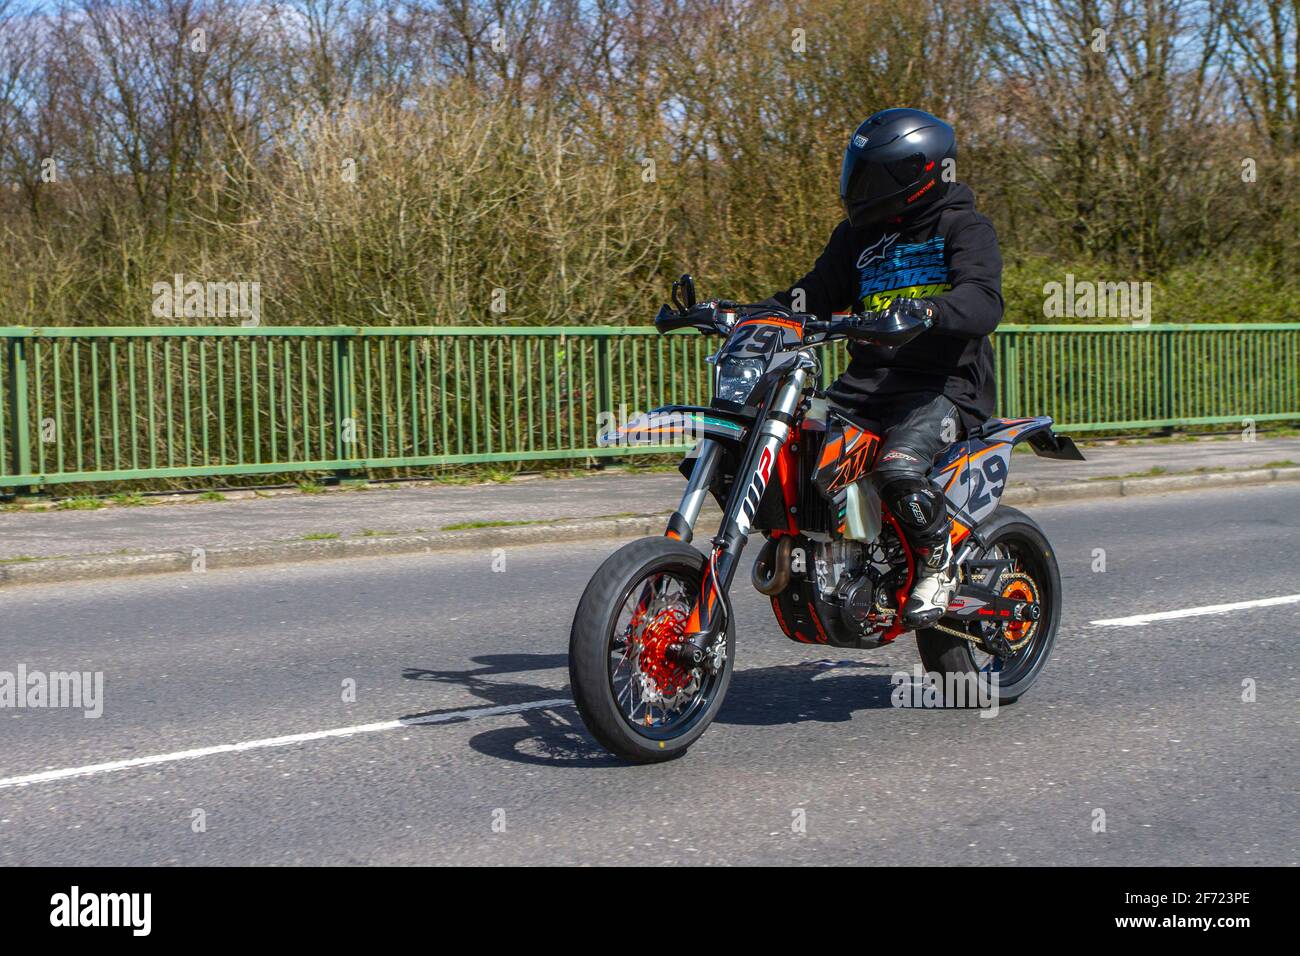 2019 KTM 500 Exc-F 19 ; motocycliste ; transport à deux roues, motos, véhicule sur les routes britanniques, motos, motocyclistes motocyclistes qui conduisent à Manchester, Royaume-Uni Banque D'Images